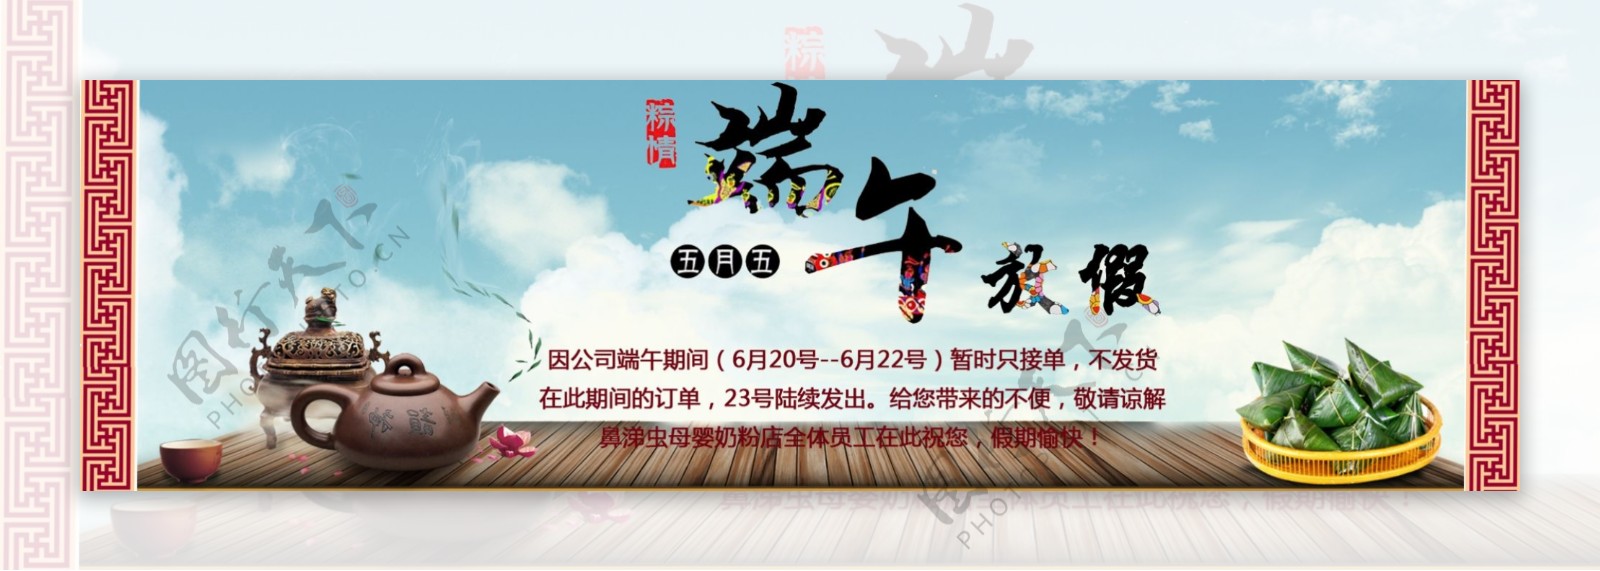 端午节粽子节放假通知首页广告